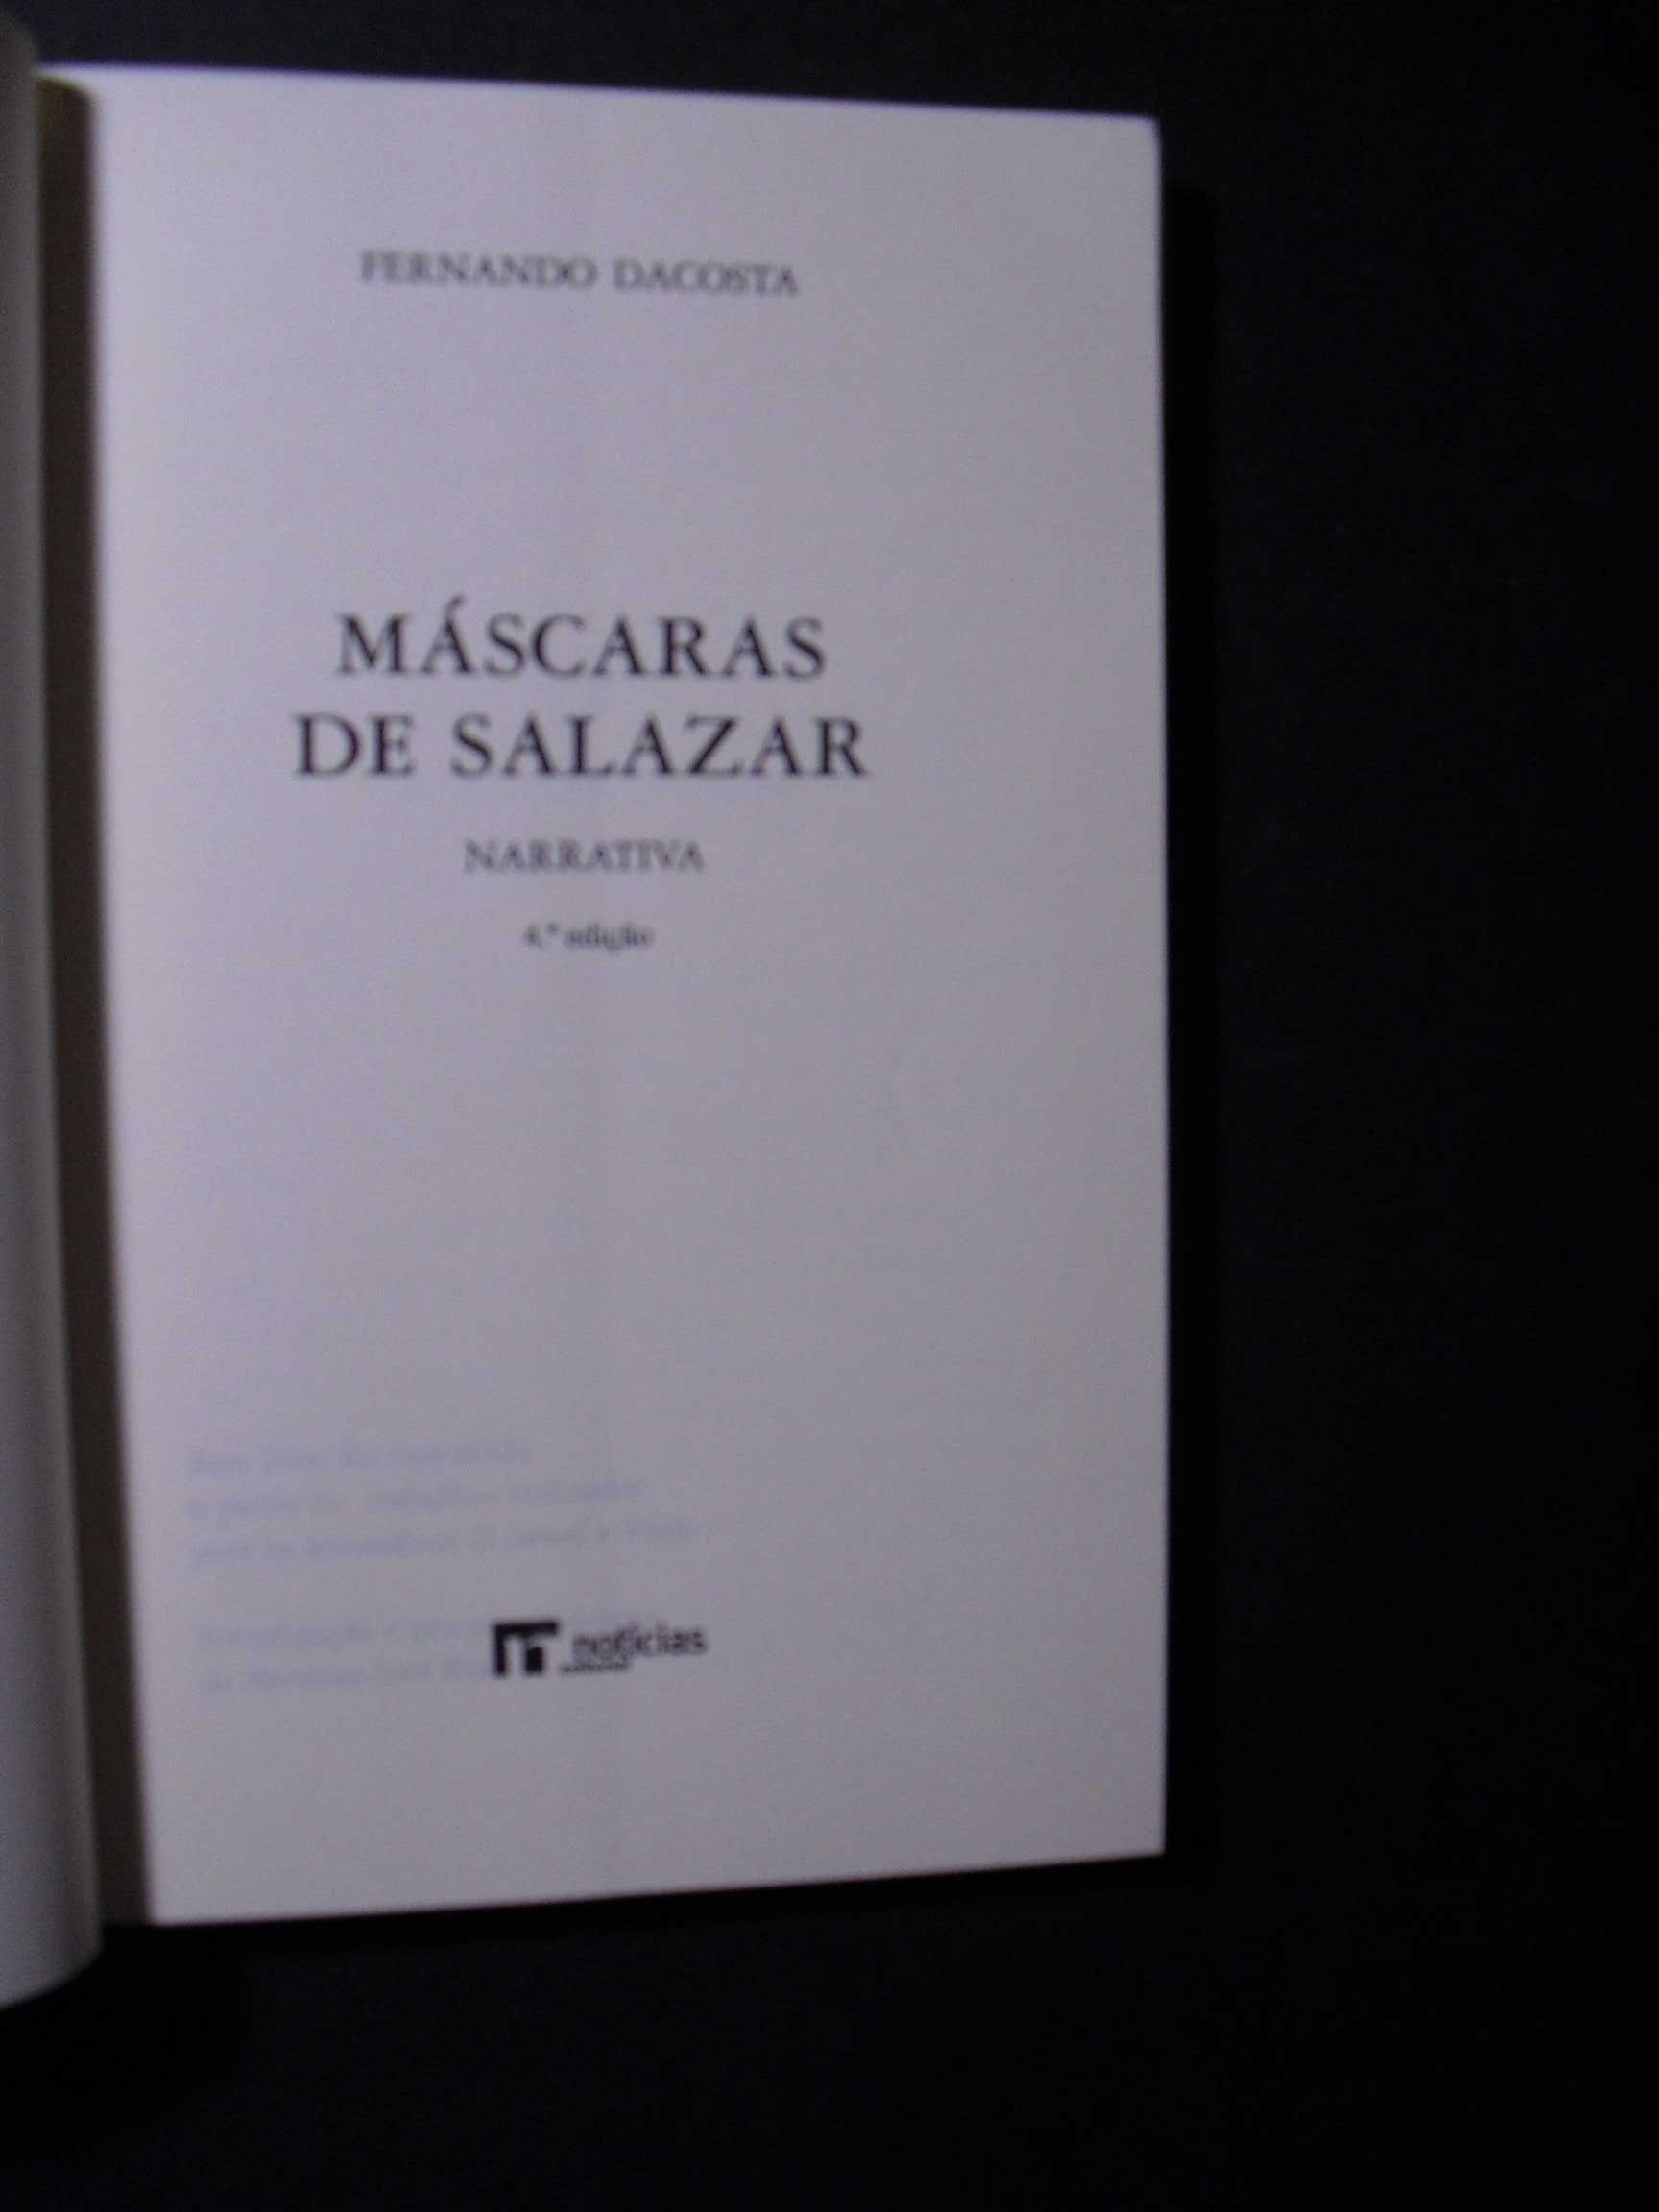 Dacosta (Fernando);Máscaras de Salazar